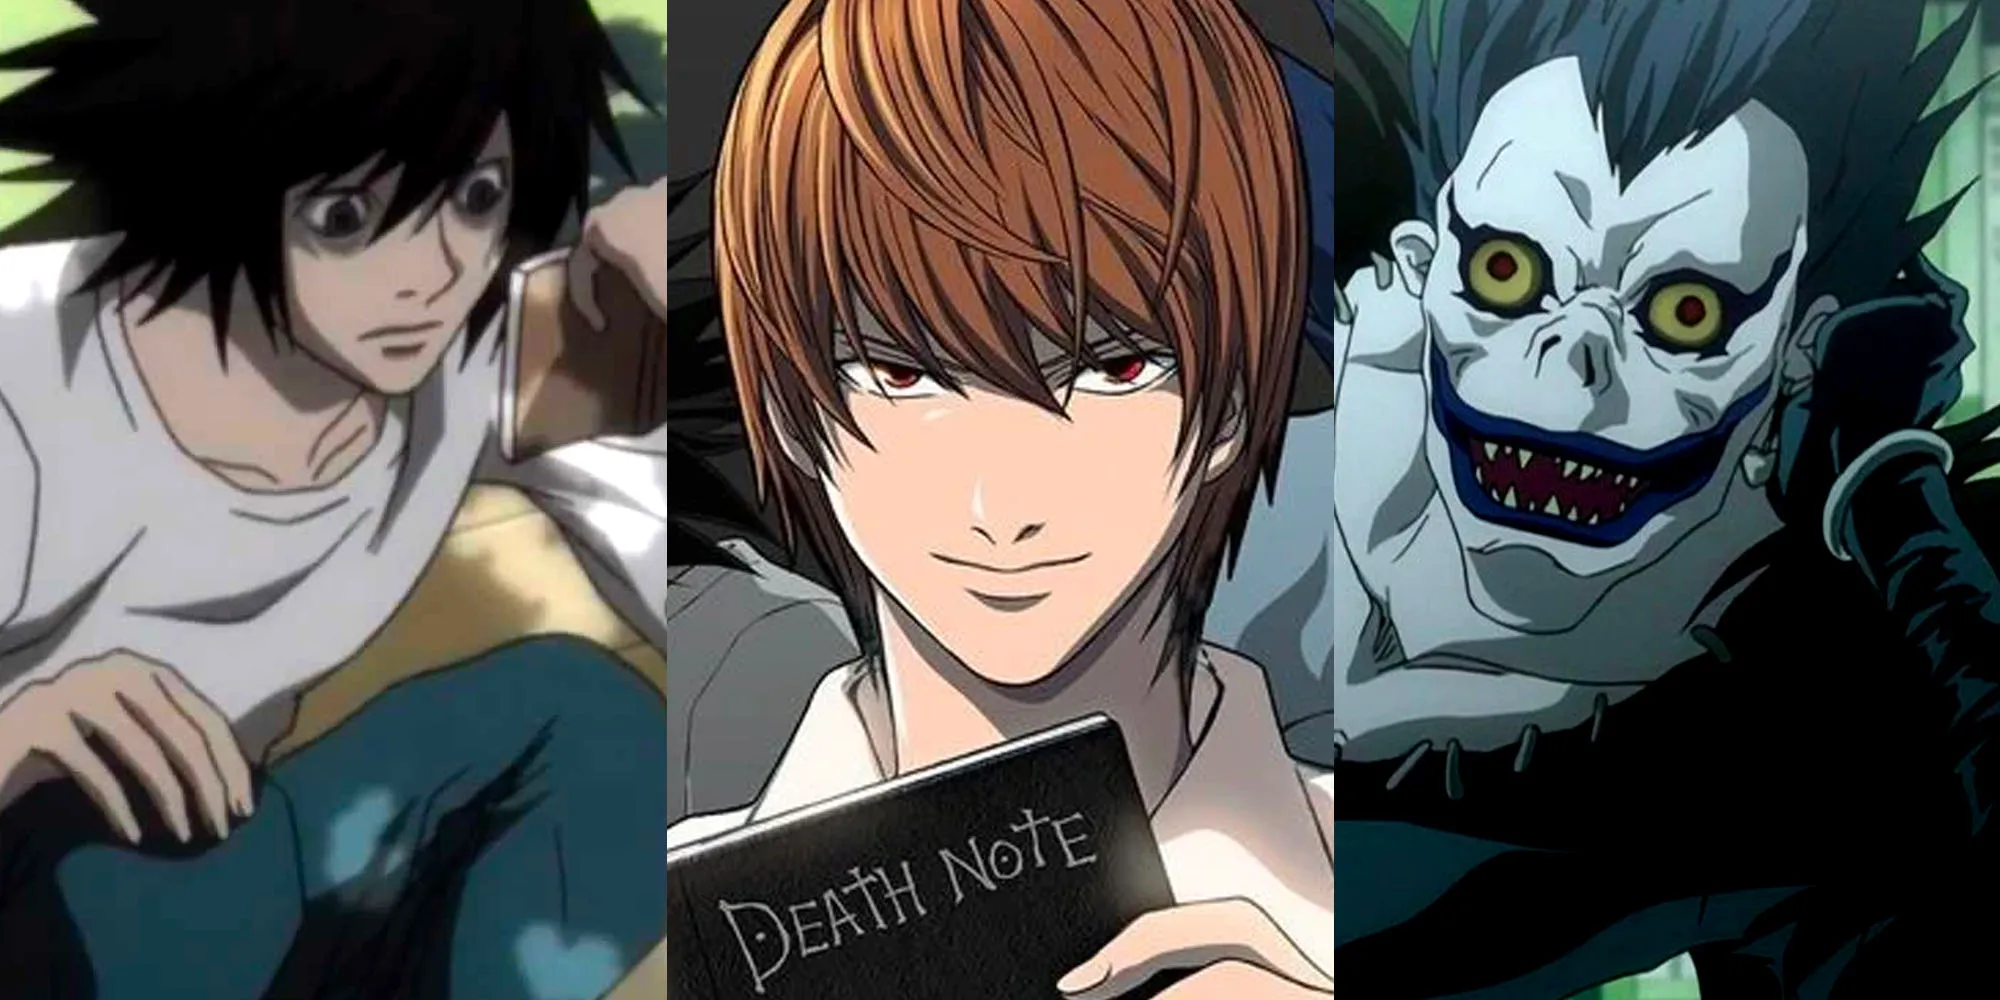 Death Note - Los personajes principales, imagen dividida